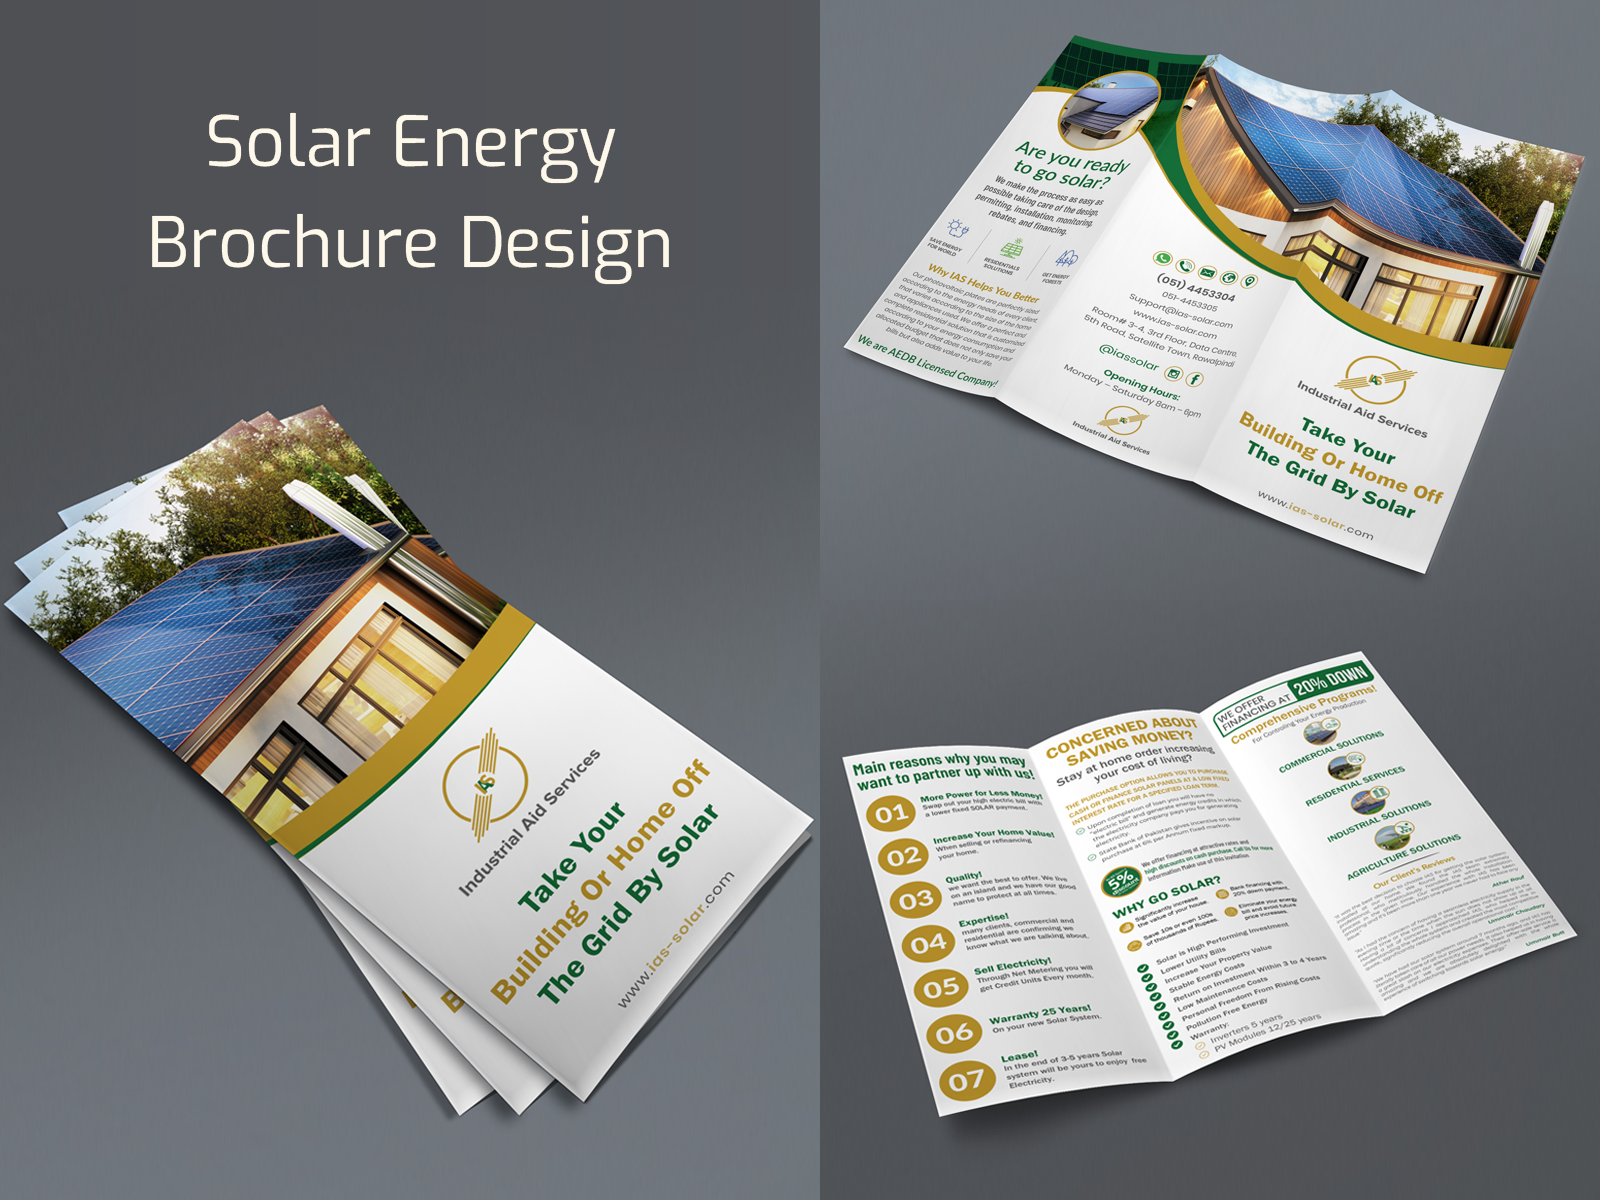 solar-energy-company-brochure-design-by-mahfujurrahm535-on-dribbble